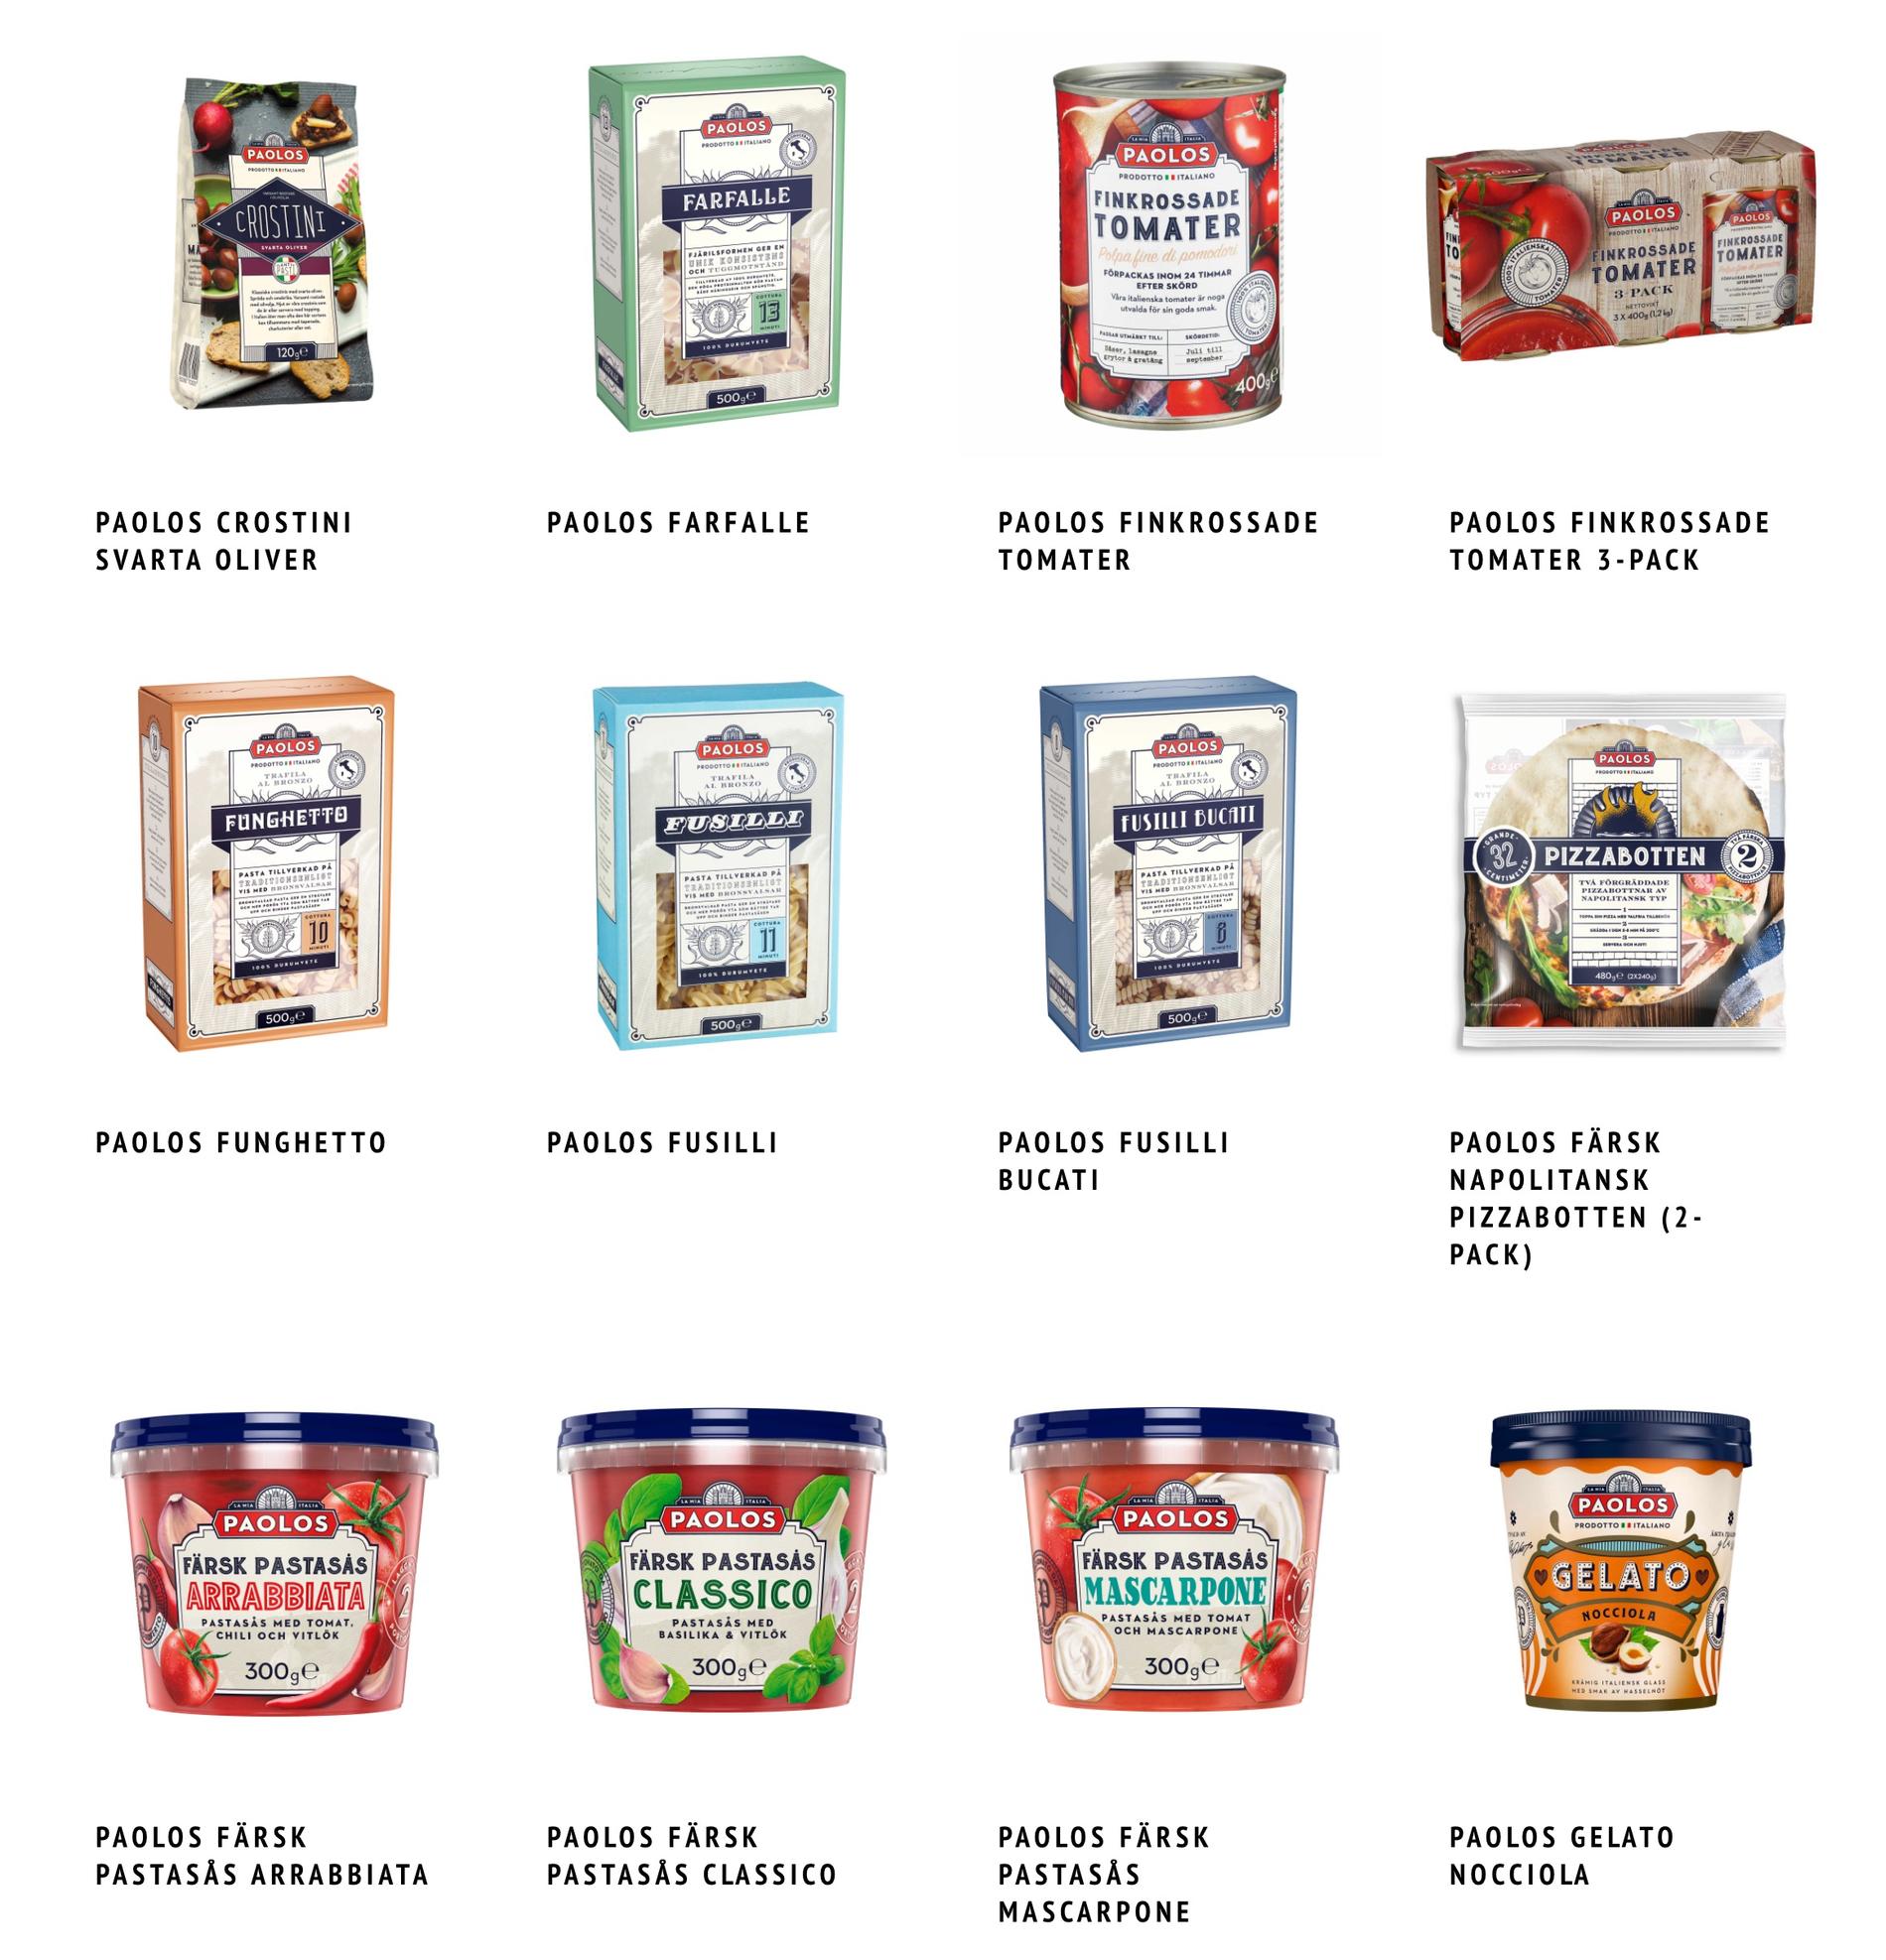 Några av produkterna under matmärket ”Paolos”. 